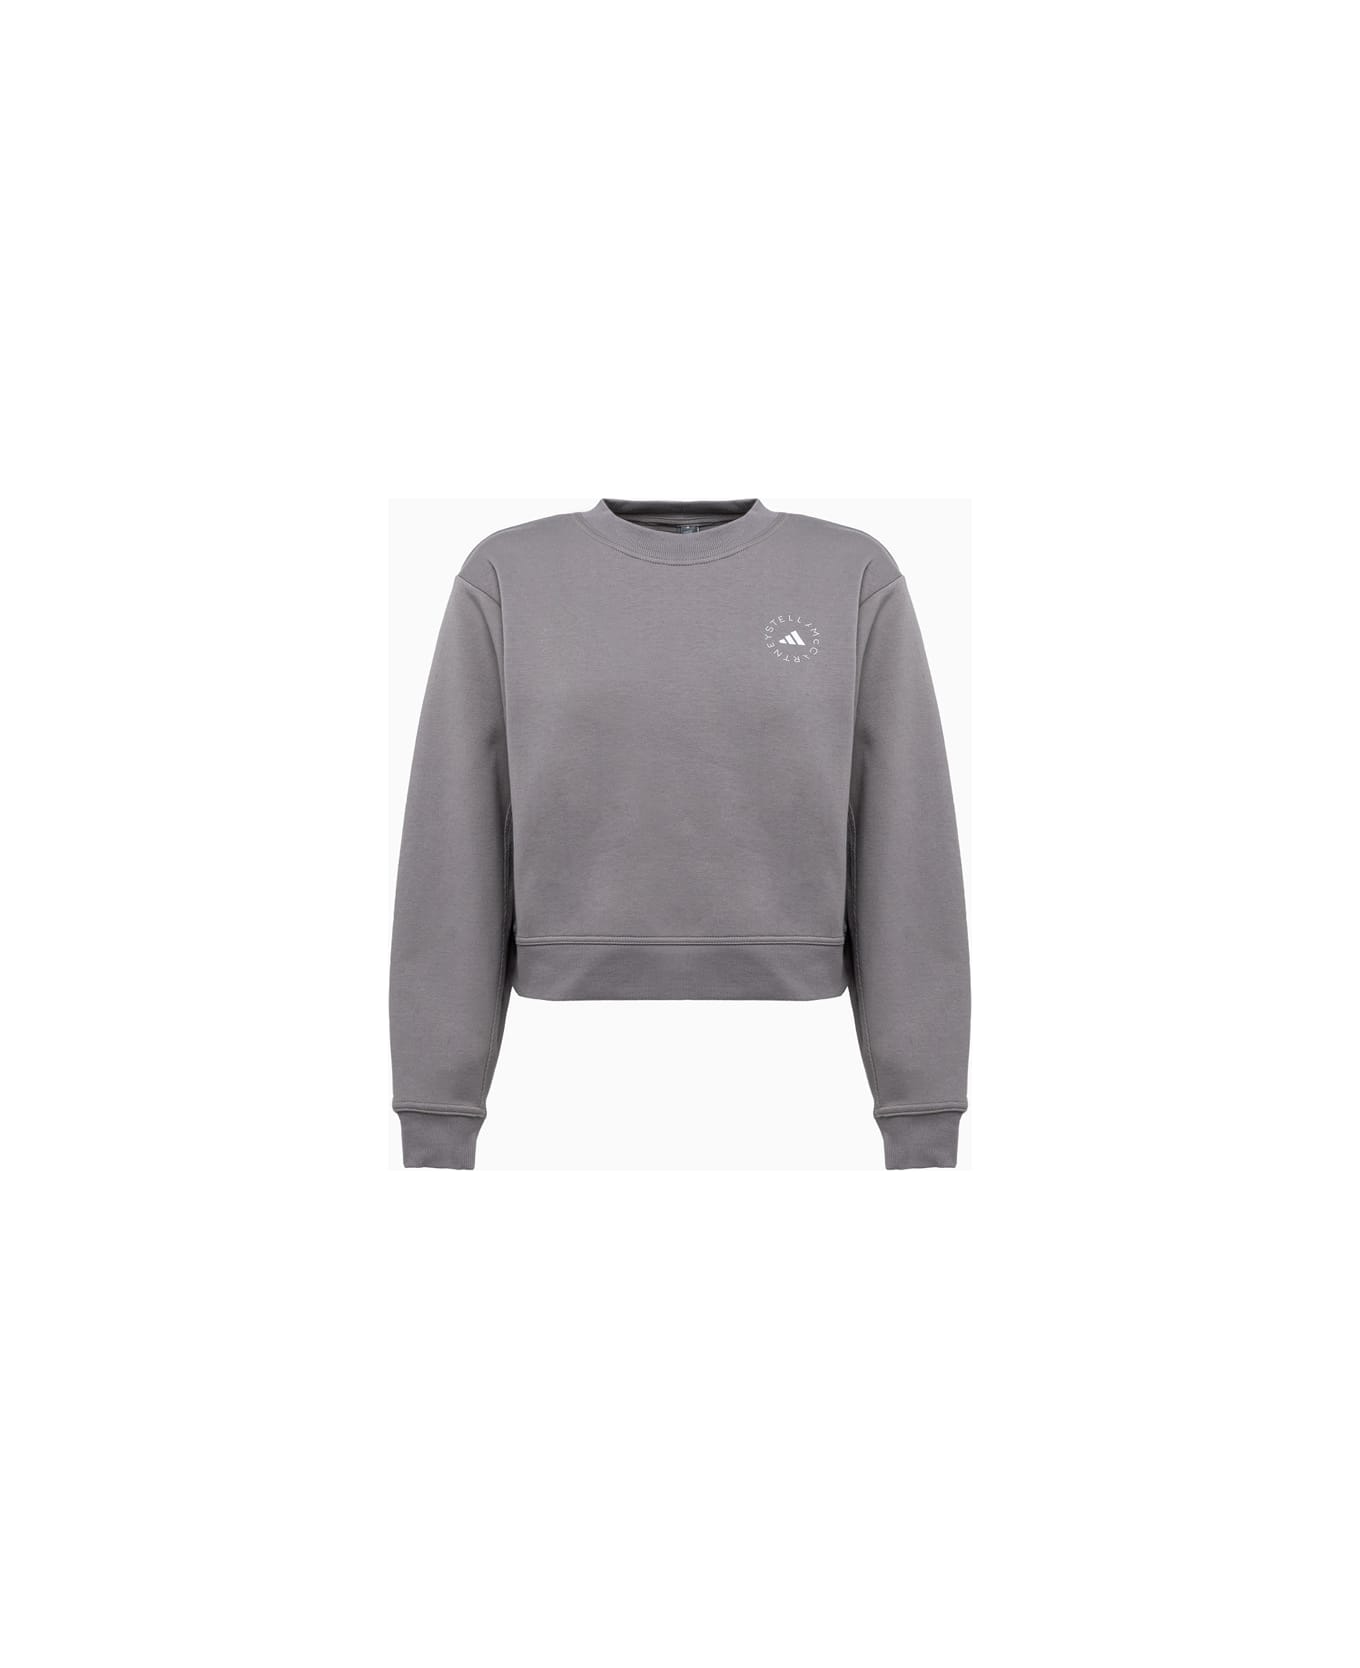 Adidas by Stella McCartney Sweatshirt - Grey フリース